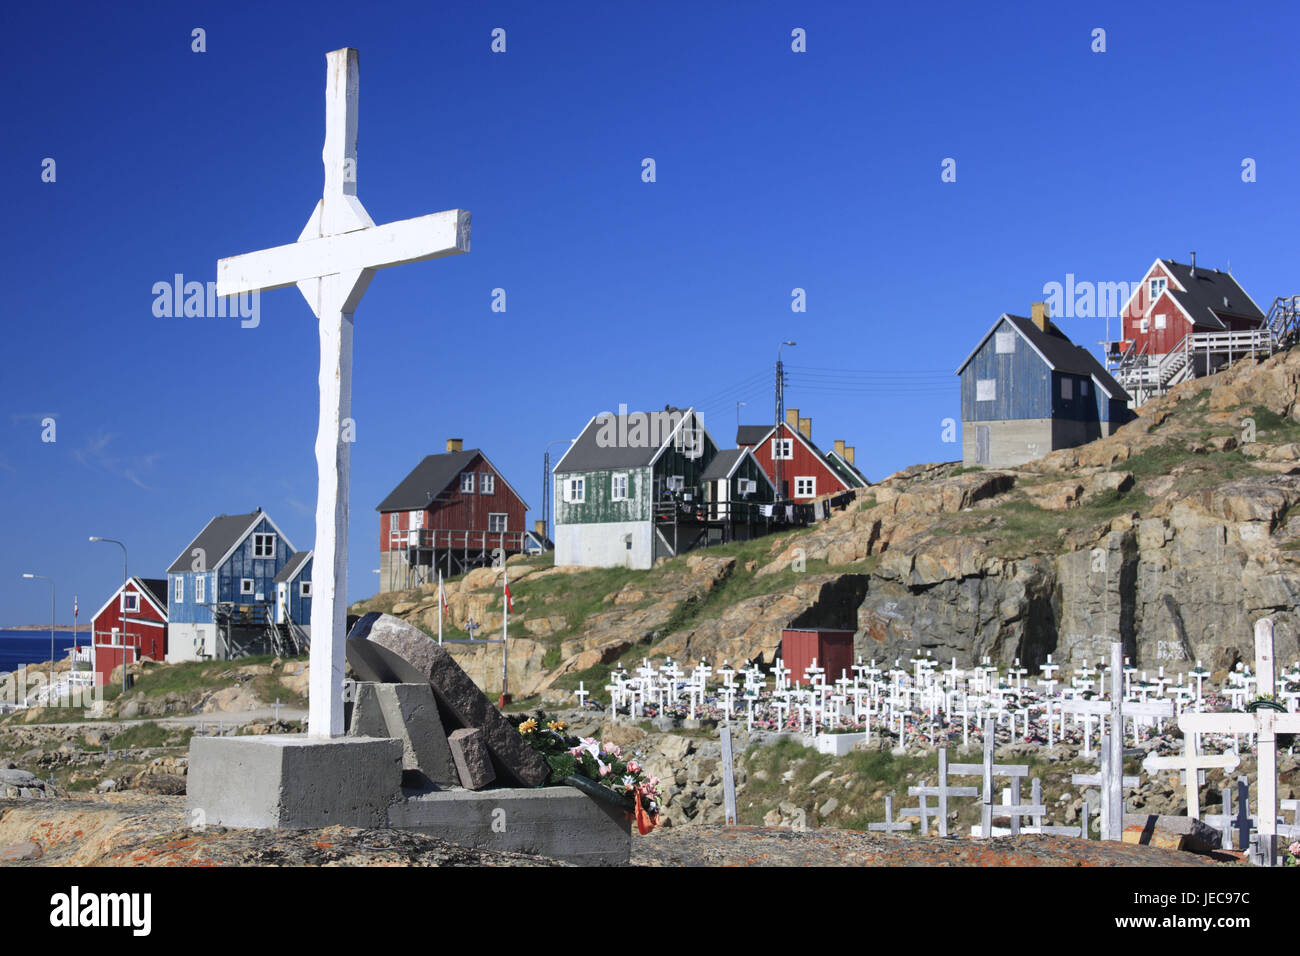 La Groenlandia, Upernavik, case residenziali, cimitero, croci, nel  nord-ovest della Groenlandia, costa, città, l'Artico, case, case in legno,  architettura, costruzione in legno modo, tipicamente per paese, deserte, la  fede, la religione, il